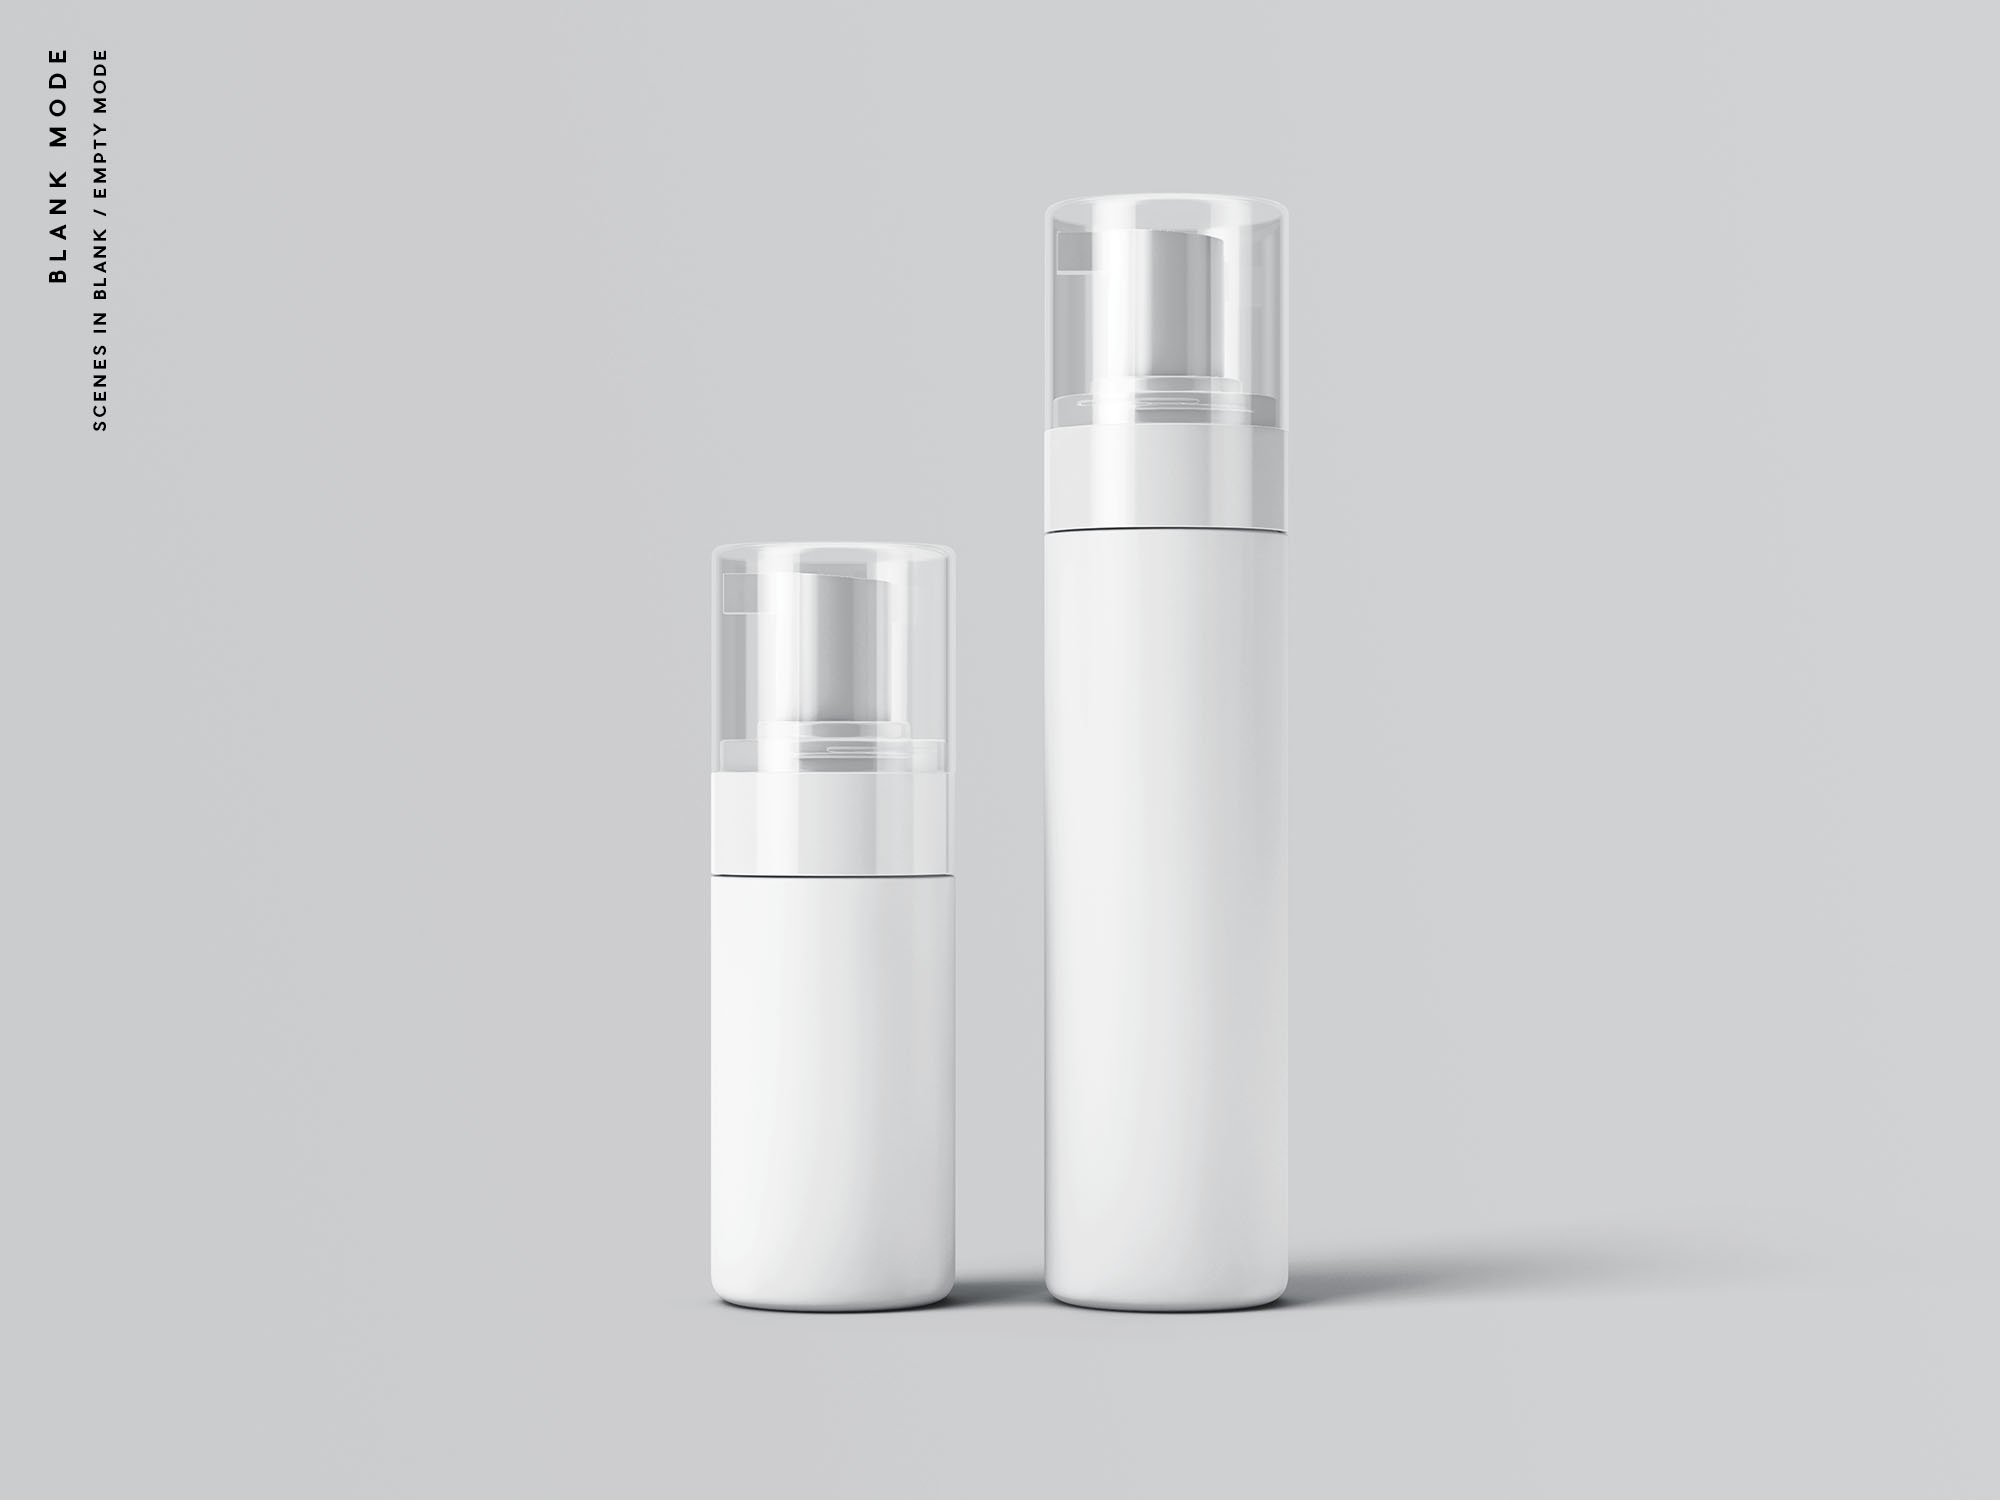 按压式化妆品护肤品瓶外观设计素材中国精选模板 Cosmetic Bottles Packaging Mockup插图(9)